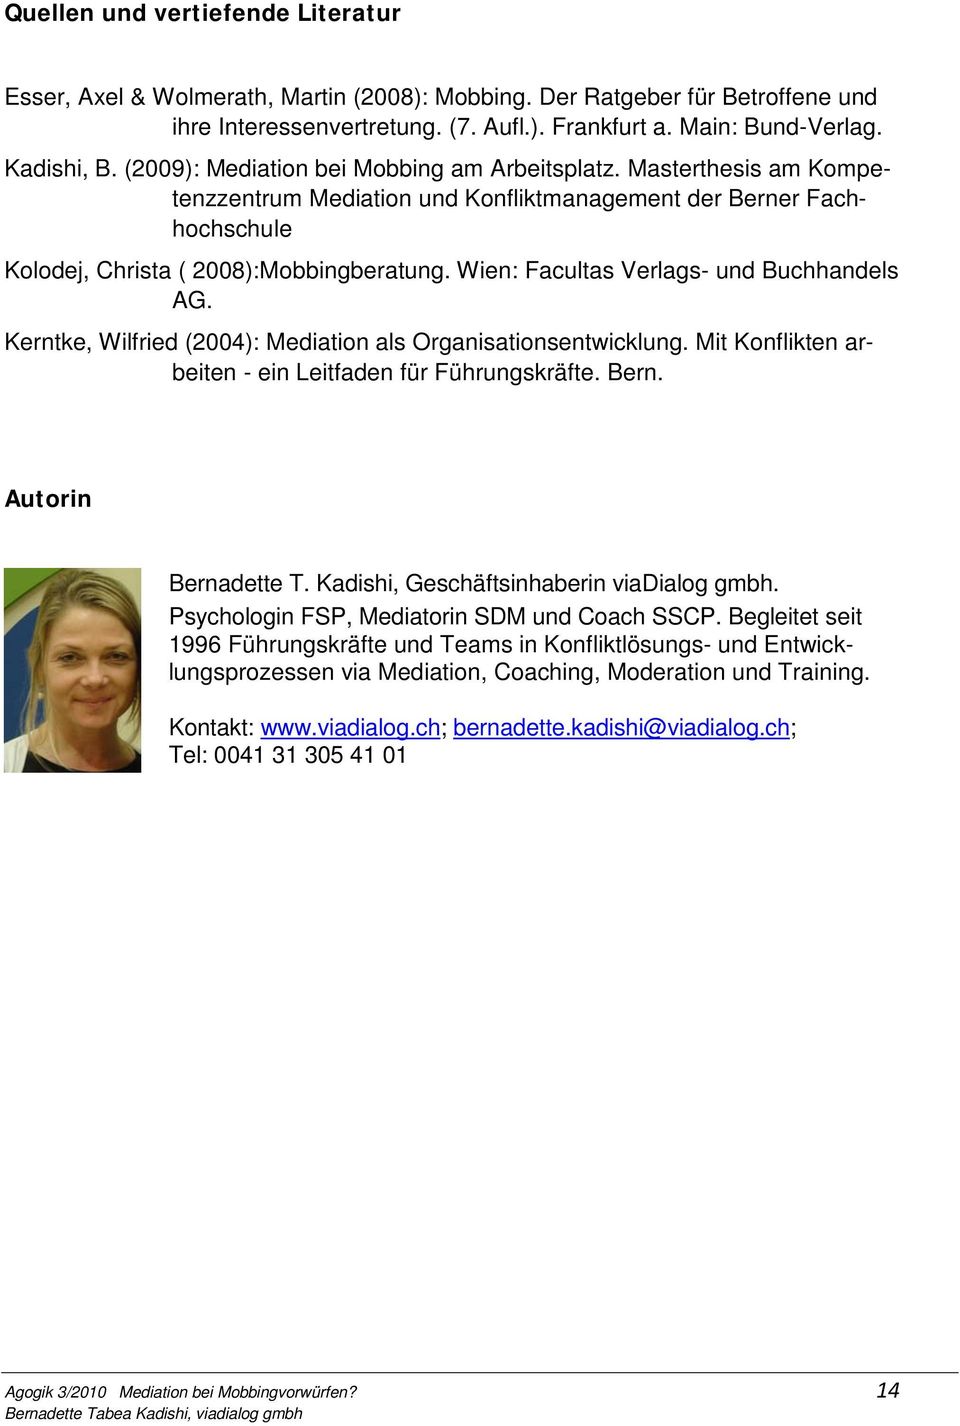 Wien: Facultas Verlags- und Buchhandels AG. Kerntke, Wilfried (2004): Mediation als Organisationsentwicklung. Mit Konflikten arbeiten - ein Leitfaden für Führungskräfte. Bern. Autorin Bernadette T.